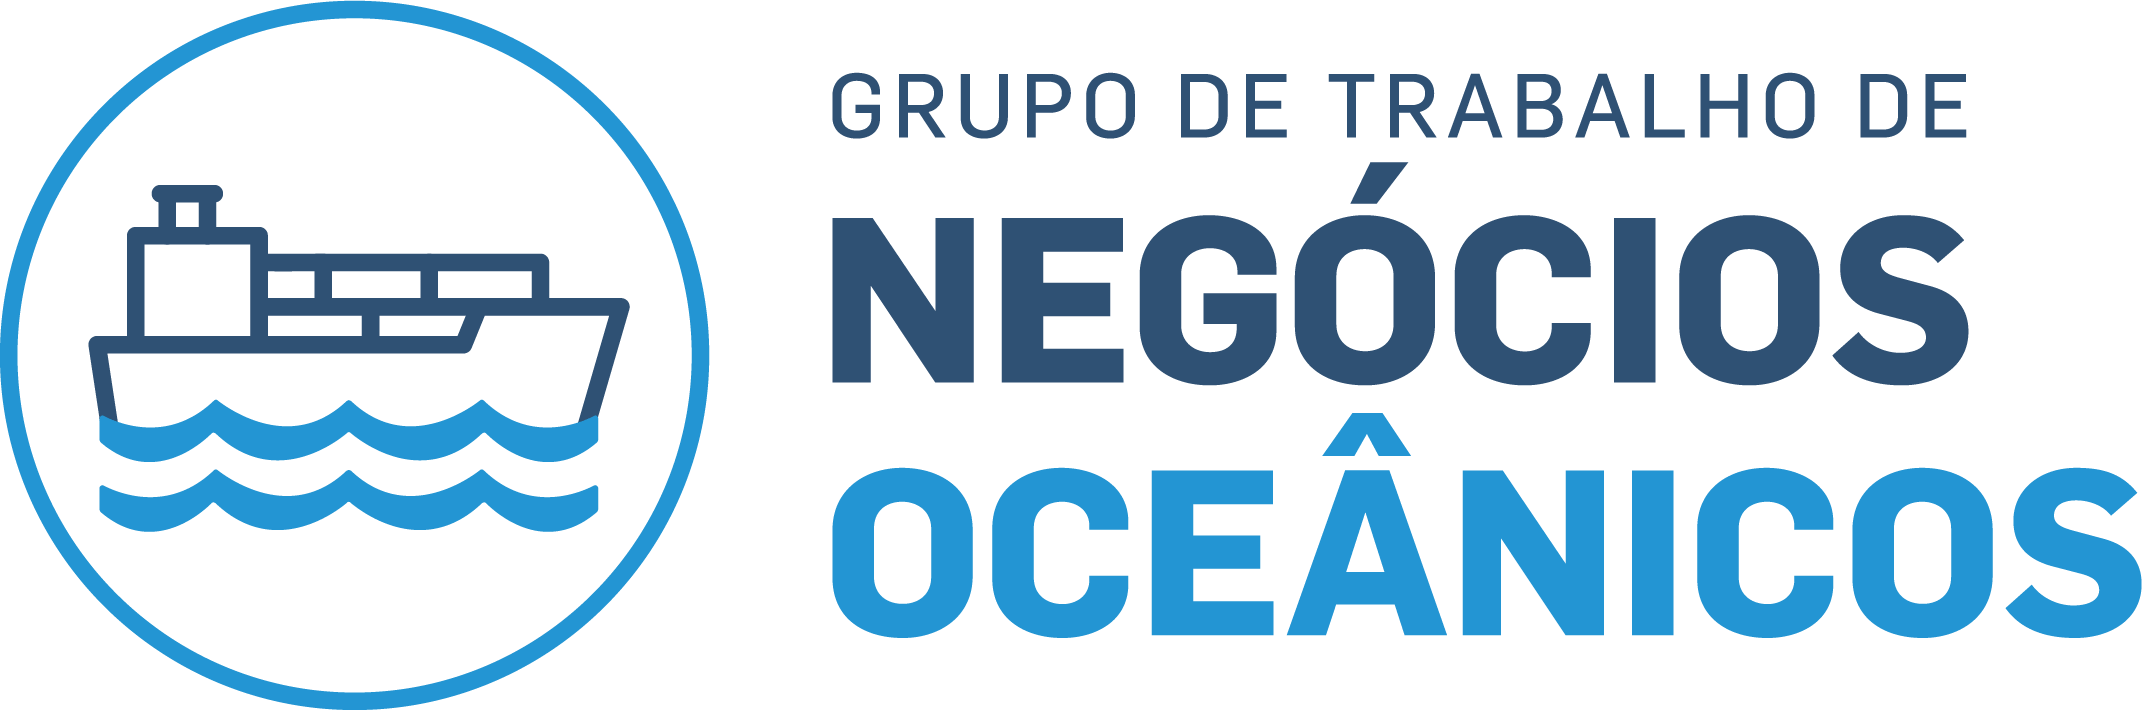 Imagem do Grupo de Trabalho de Negócios Oceânicos 